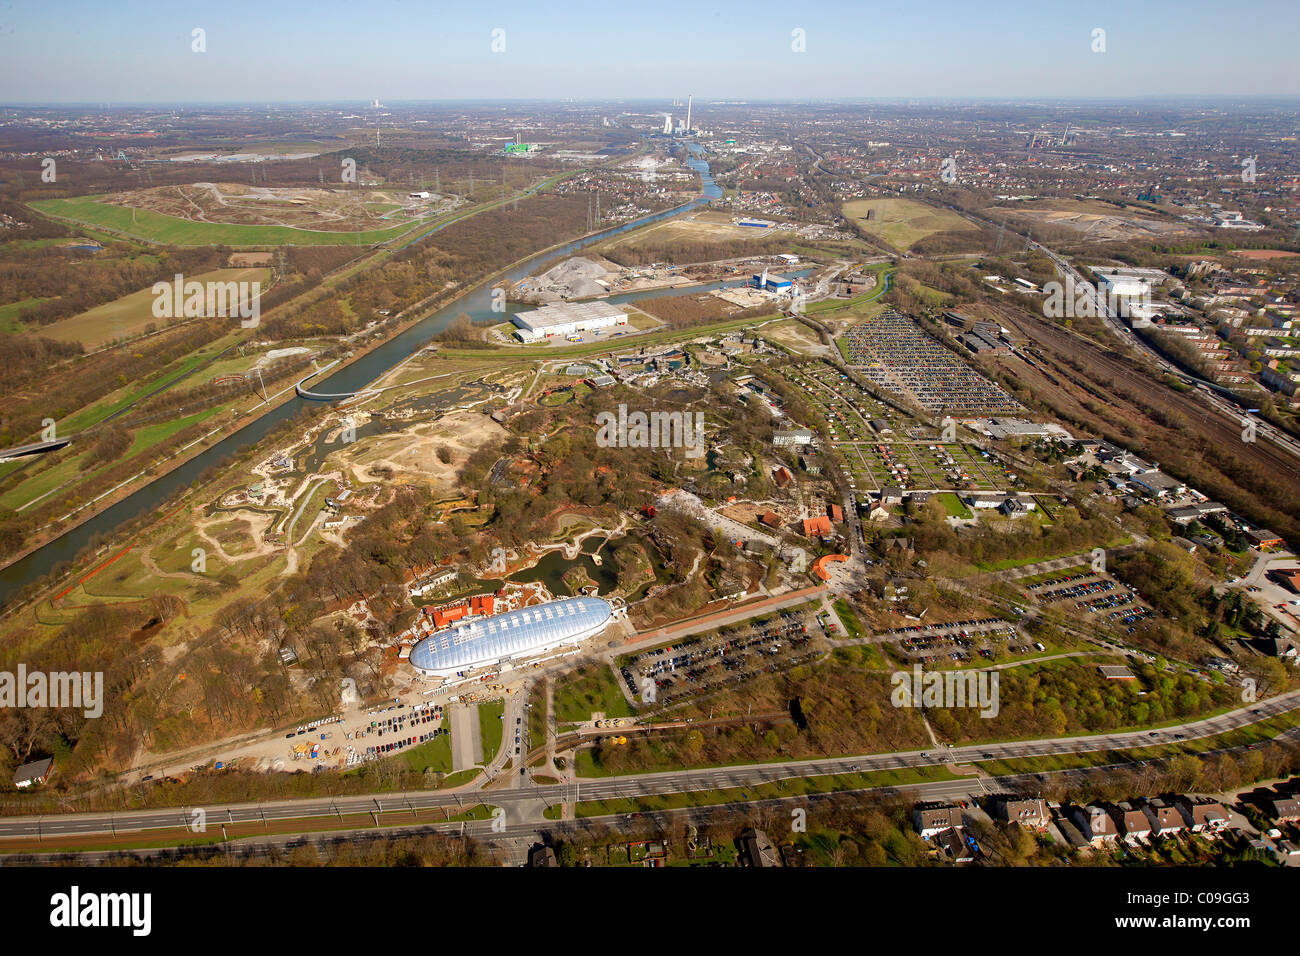 Aerial view, zoo, Zoom Erlebniswelt animal theme park, Holderlinstrasse 72, Gelsenkirchen, Ruhrgebiet region Stock Photo